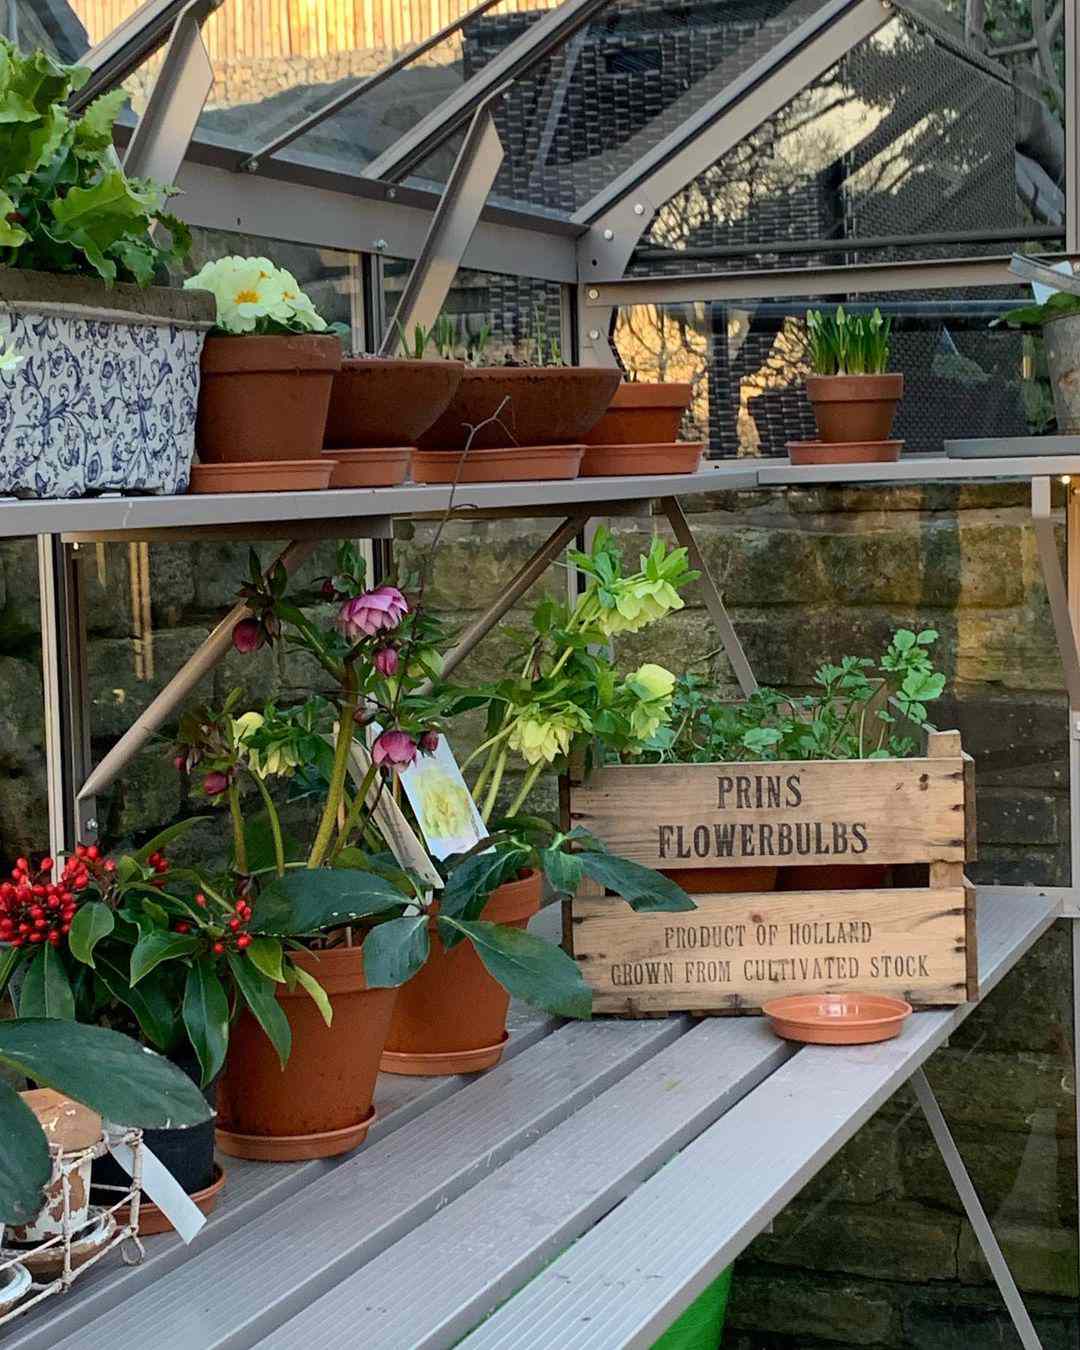 Mesa de trabajo y estanterías de invernadero con macetas de terracota llenas de flores y un cajón de madera para bulbos de flor